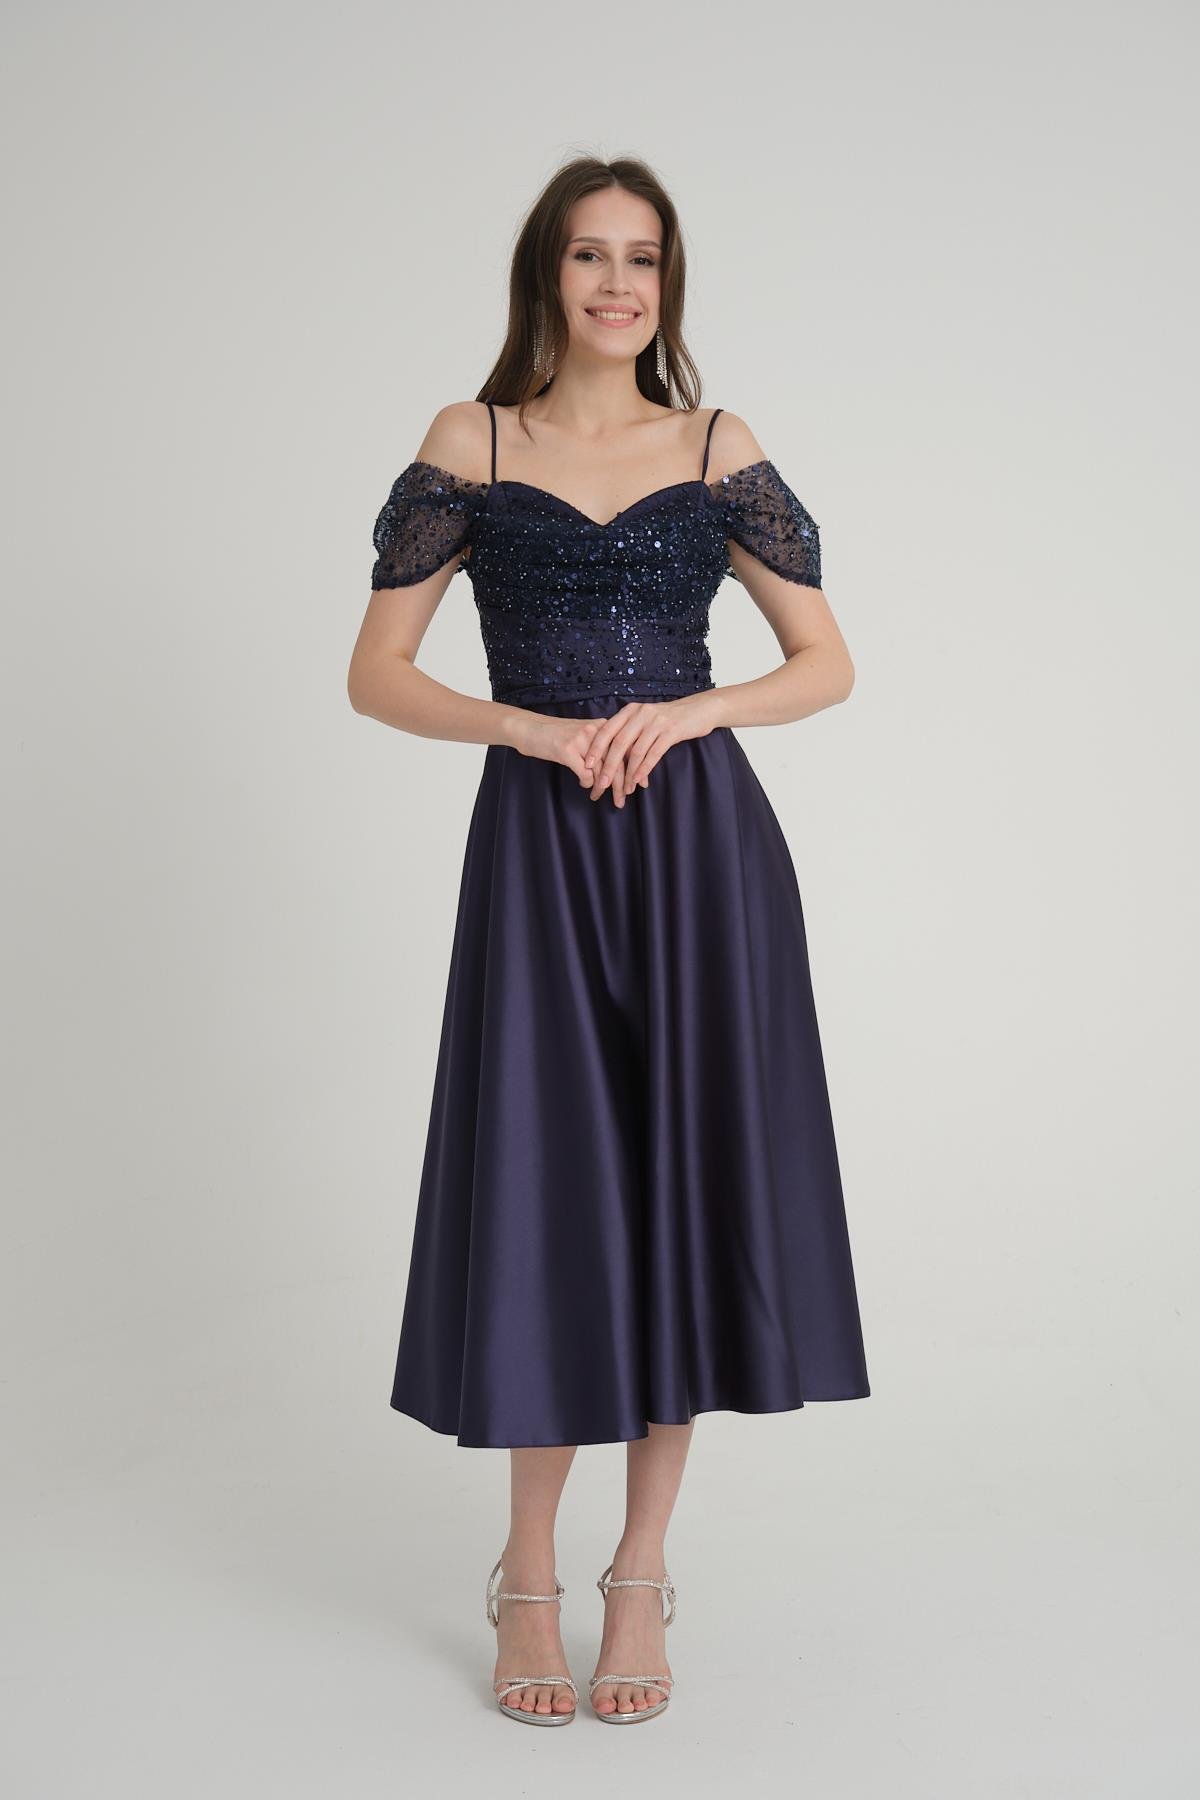 Lacivert Abiye Elbise Modelleri ve Fiyatları | Livanomi